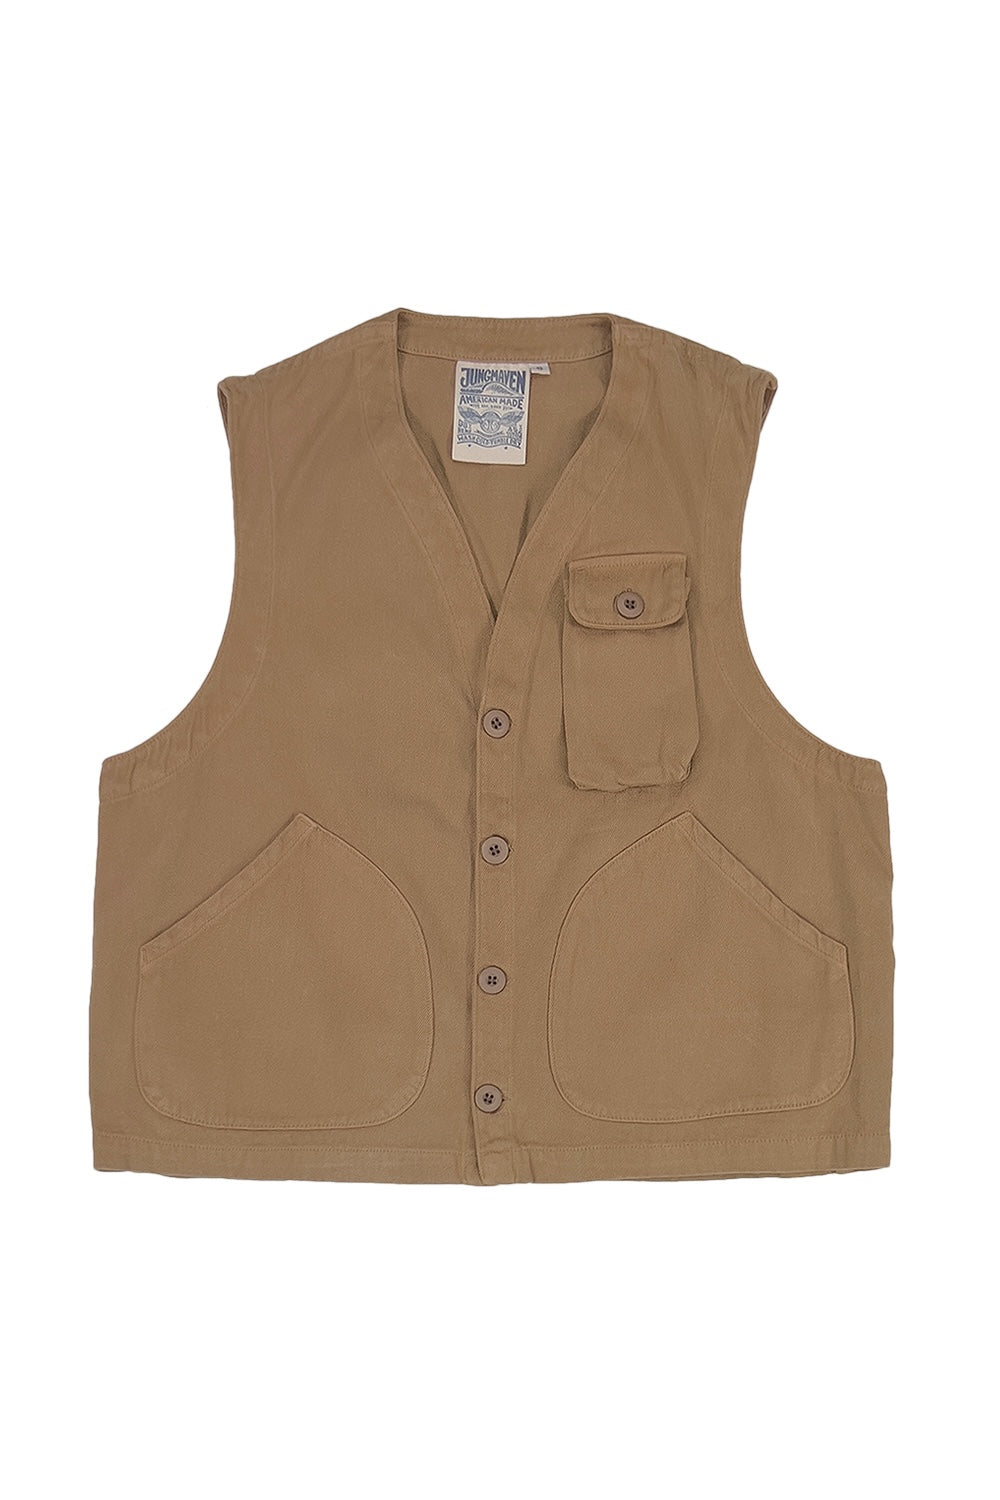 Falcon Vest | Jungmaven Hemp Clothing & Accessories / Color: Coyote